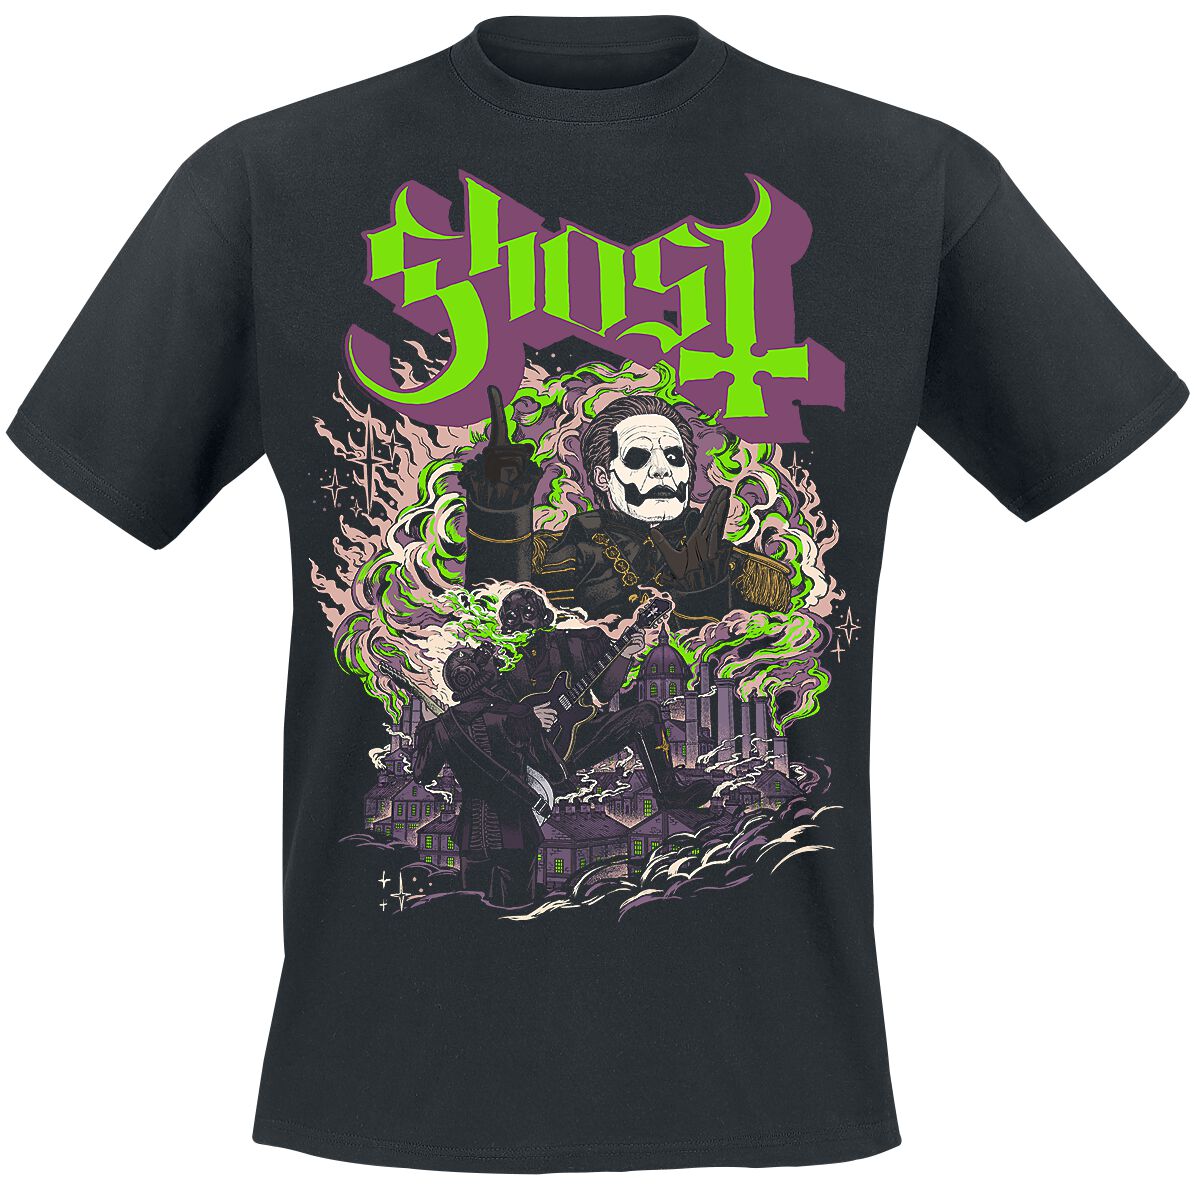 Ghost T-Shirt - FOG - YK - S bis 4XL - für Männer - Größe S - schwarz  - Lizenziertes Merchandise!